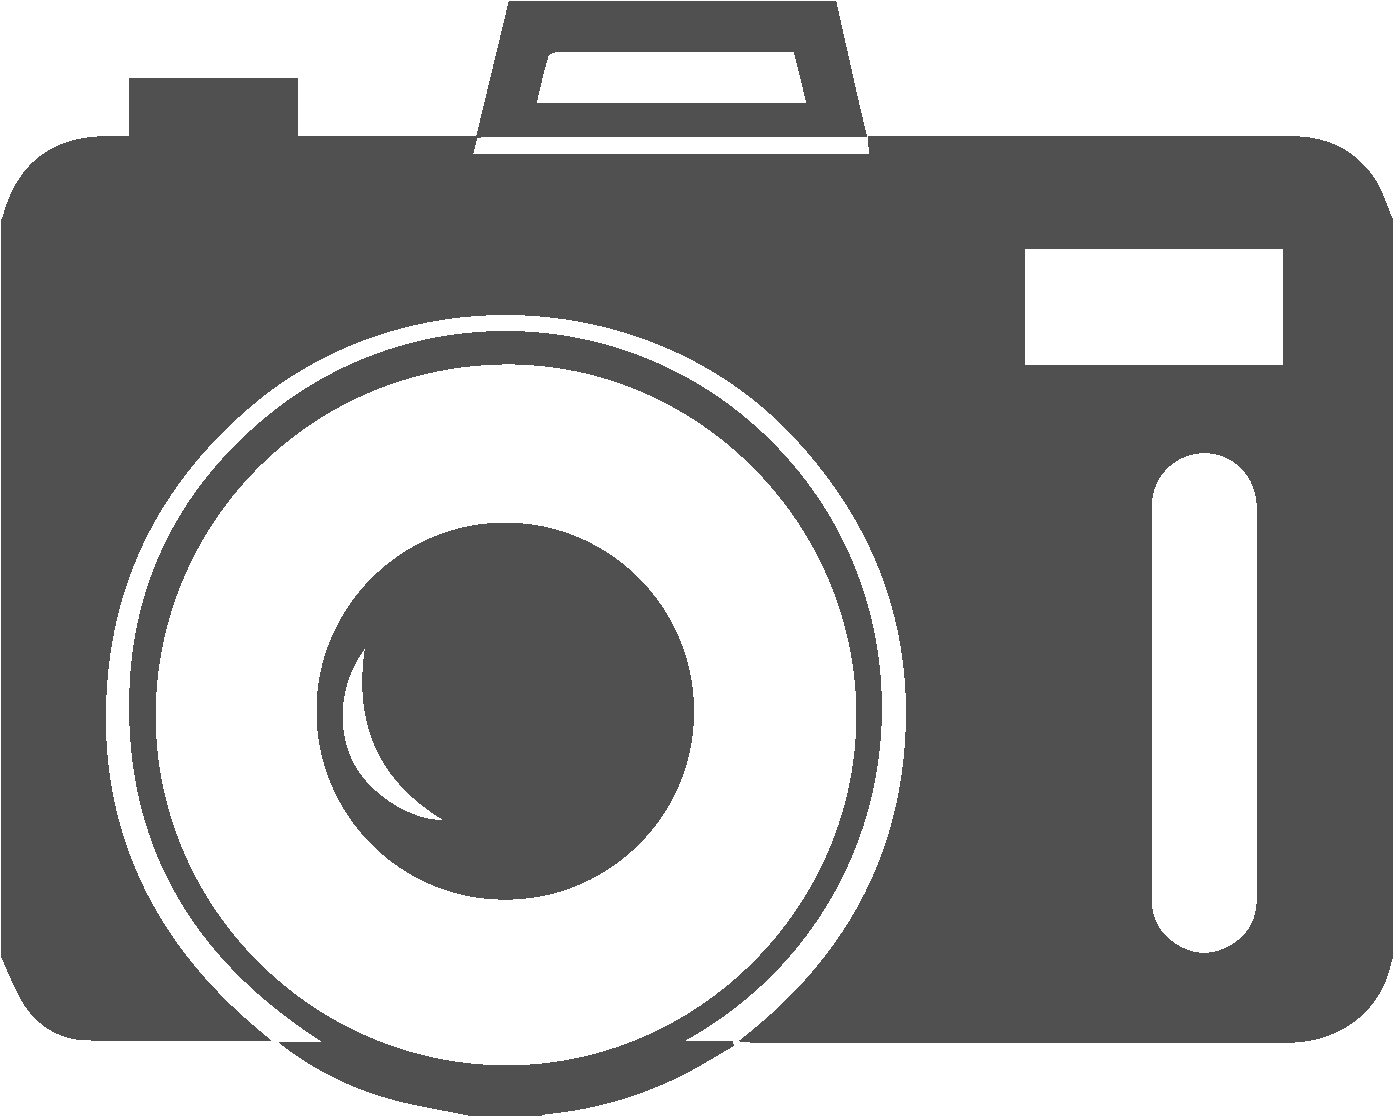 Camera Logo PNG Image | PNG Arts